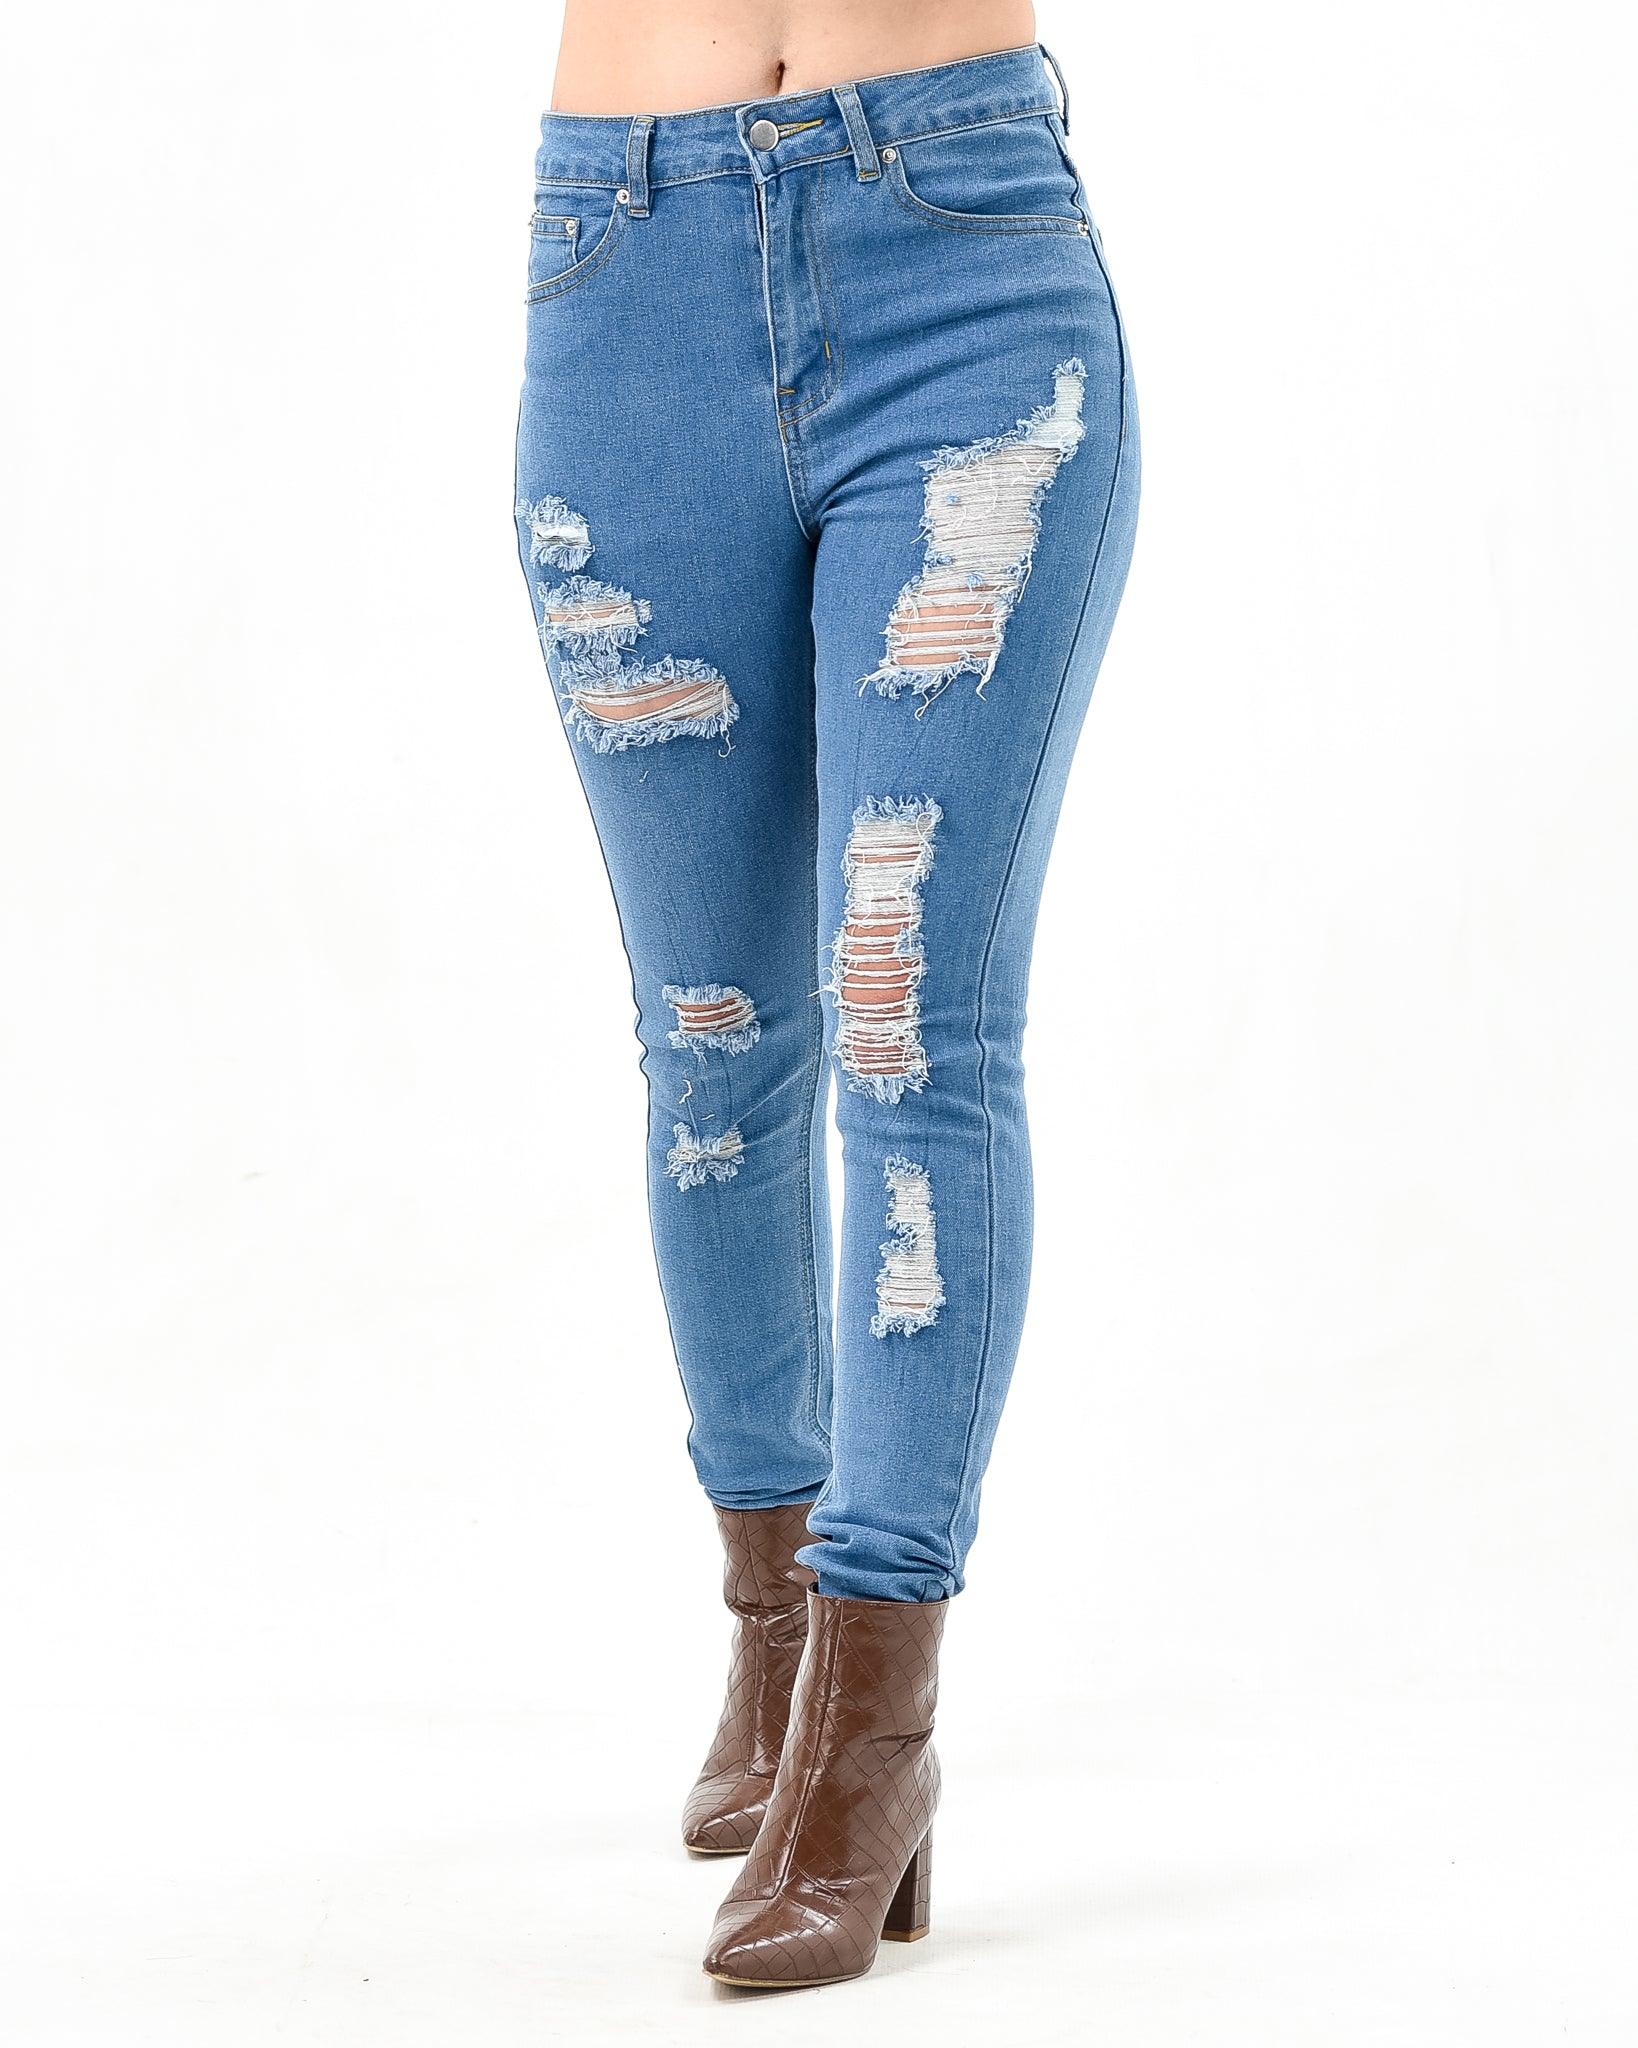 Skinny jeans XD100 - XD21